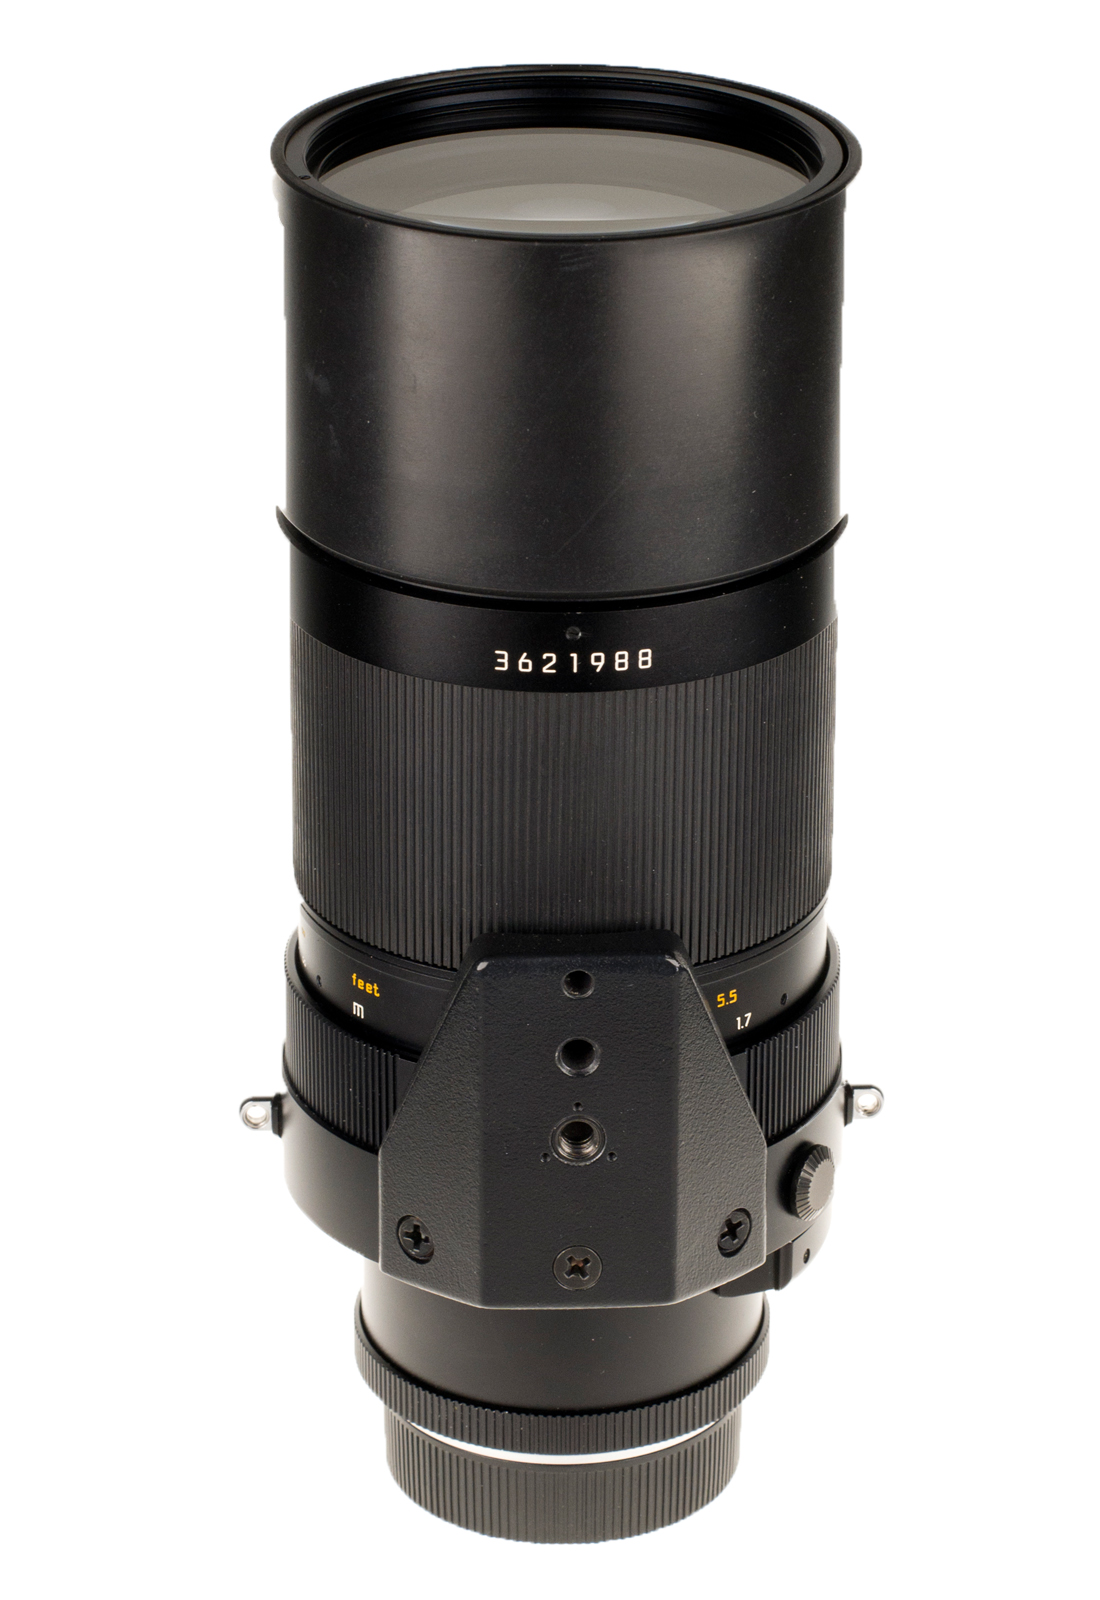 Leica APO-Telyt-R 1:4/280mm + CLA Zertifikat